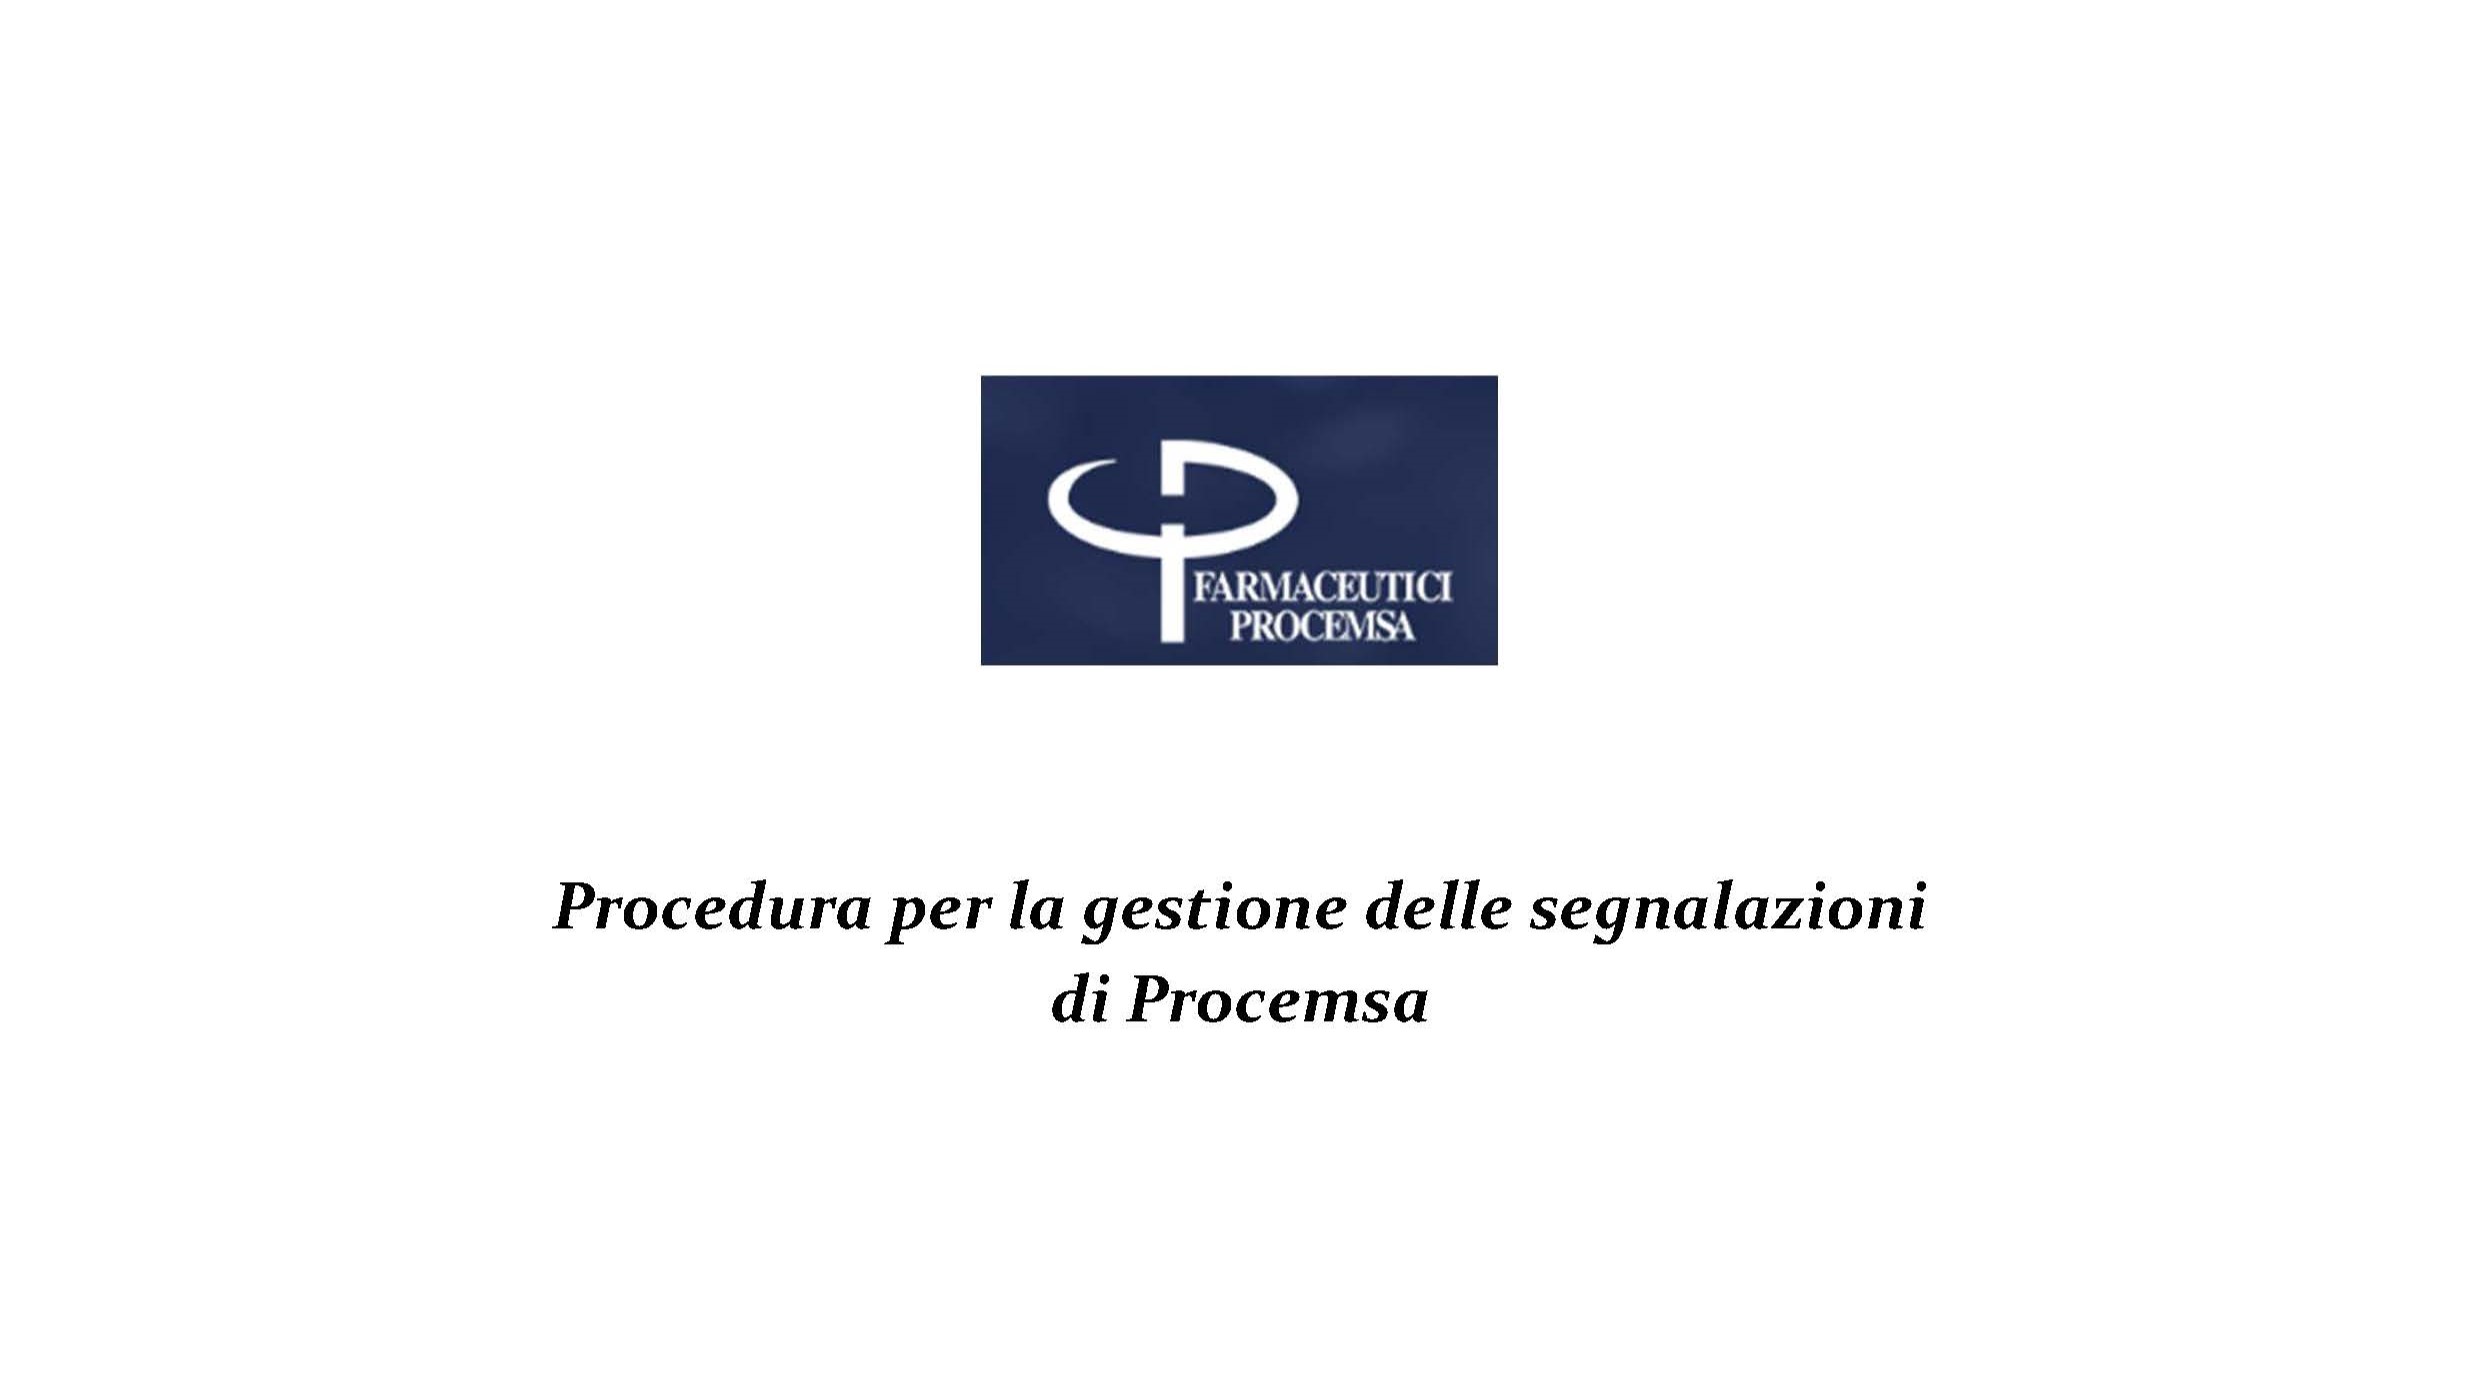 //www.procemsa.it/wp-content/uploads/2023/09/Procemsa_Procedura-per-la-gestione-delle-segnalazioni_Pagina_01.jpg